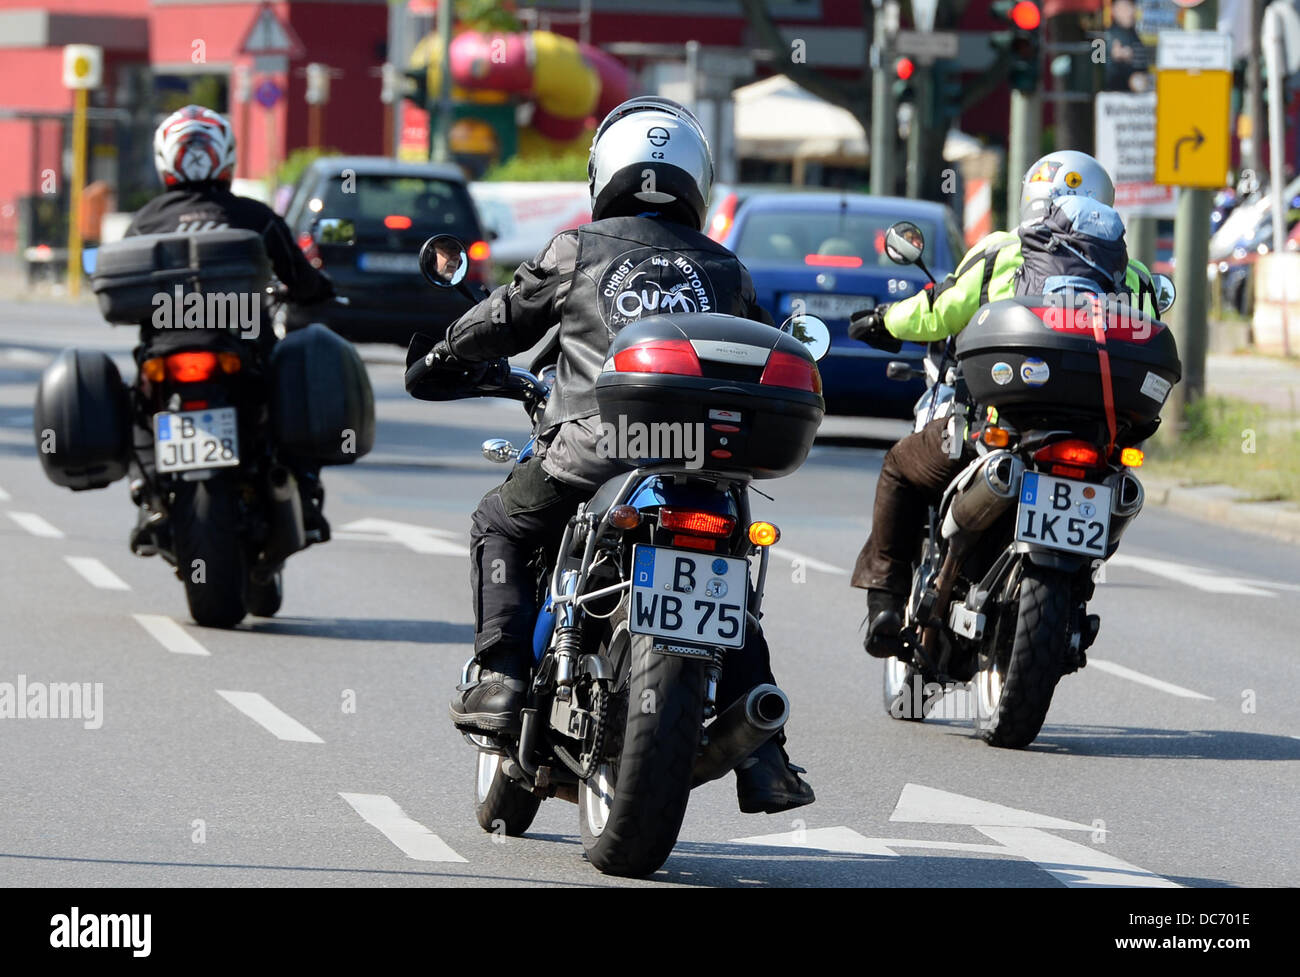 Motocicli sono azionati all'inizio del motociclo pellegrinaggio a Santiago de Compostela in Berlin-Alt-Mariendorf, Germania, 10 agosto 2013. Foto: Matthias esitano di fronte Foto Stock